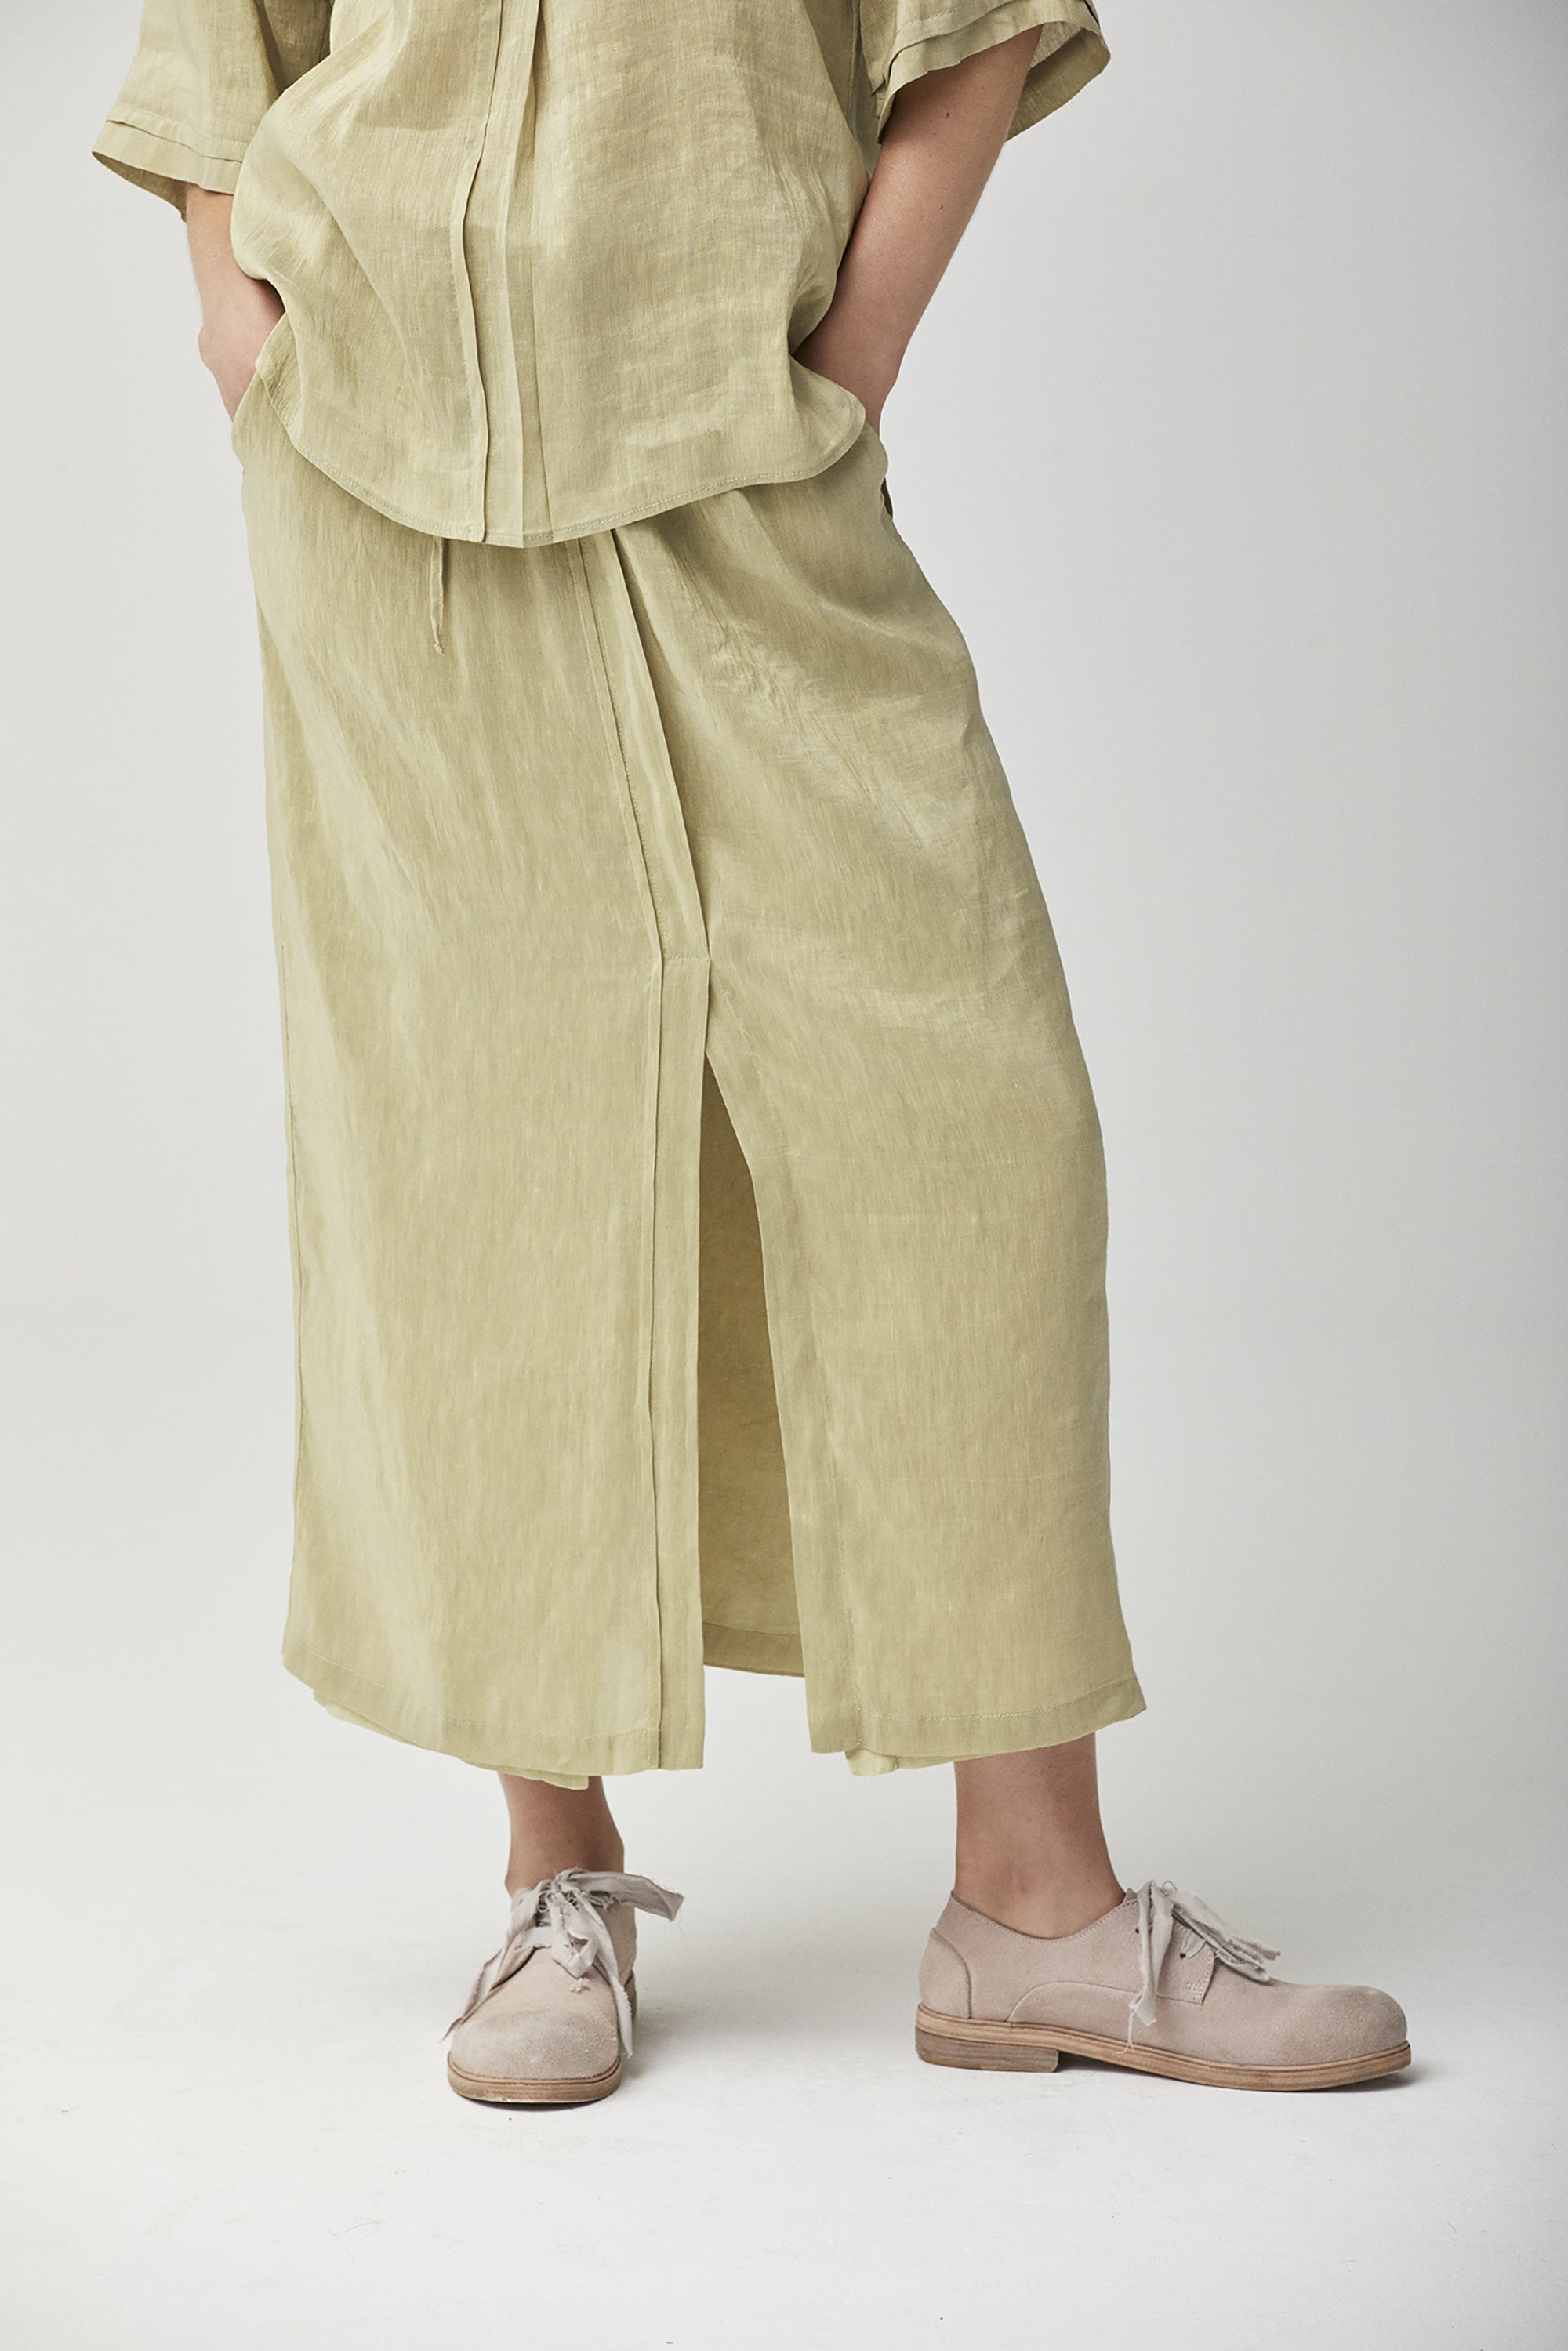 Linen Silk Skirt